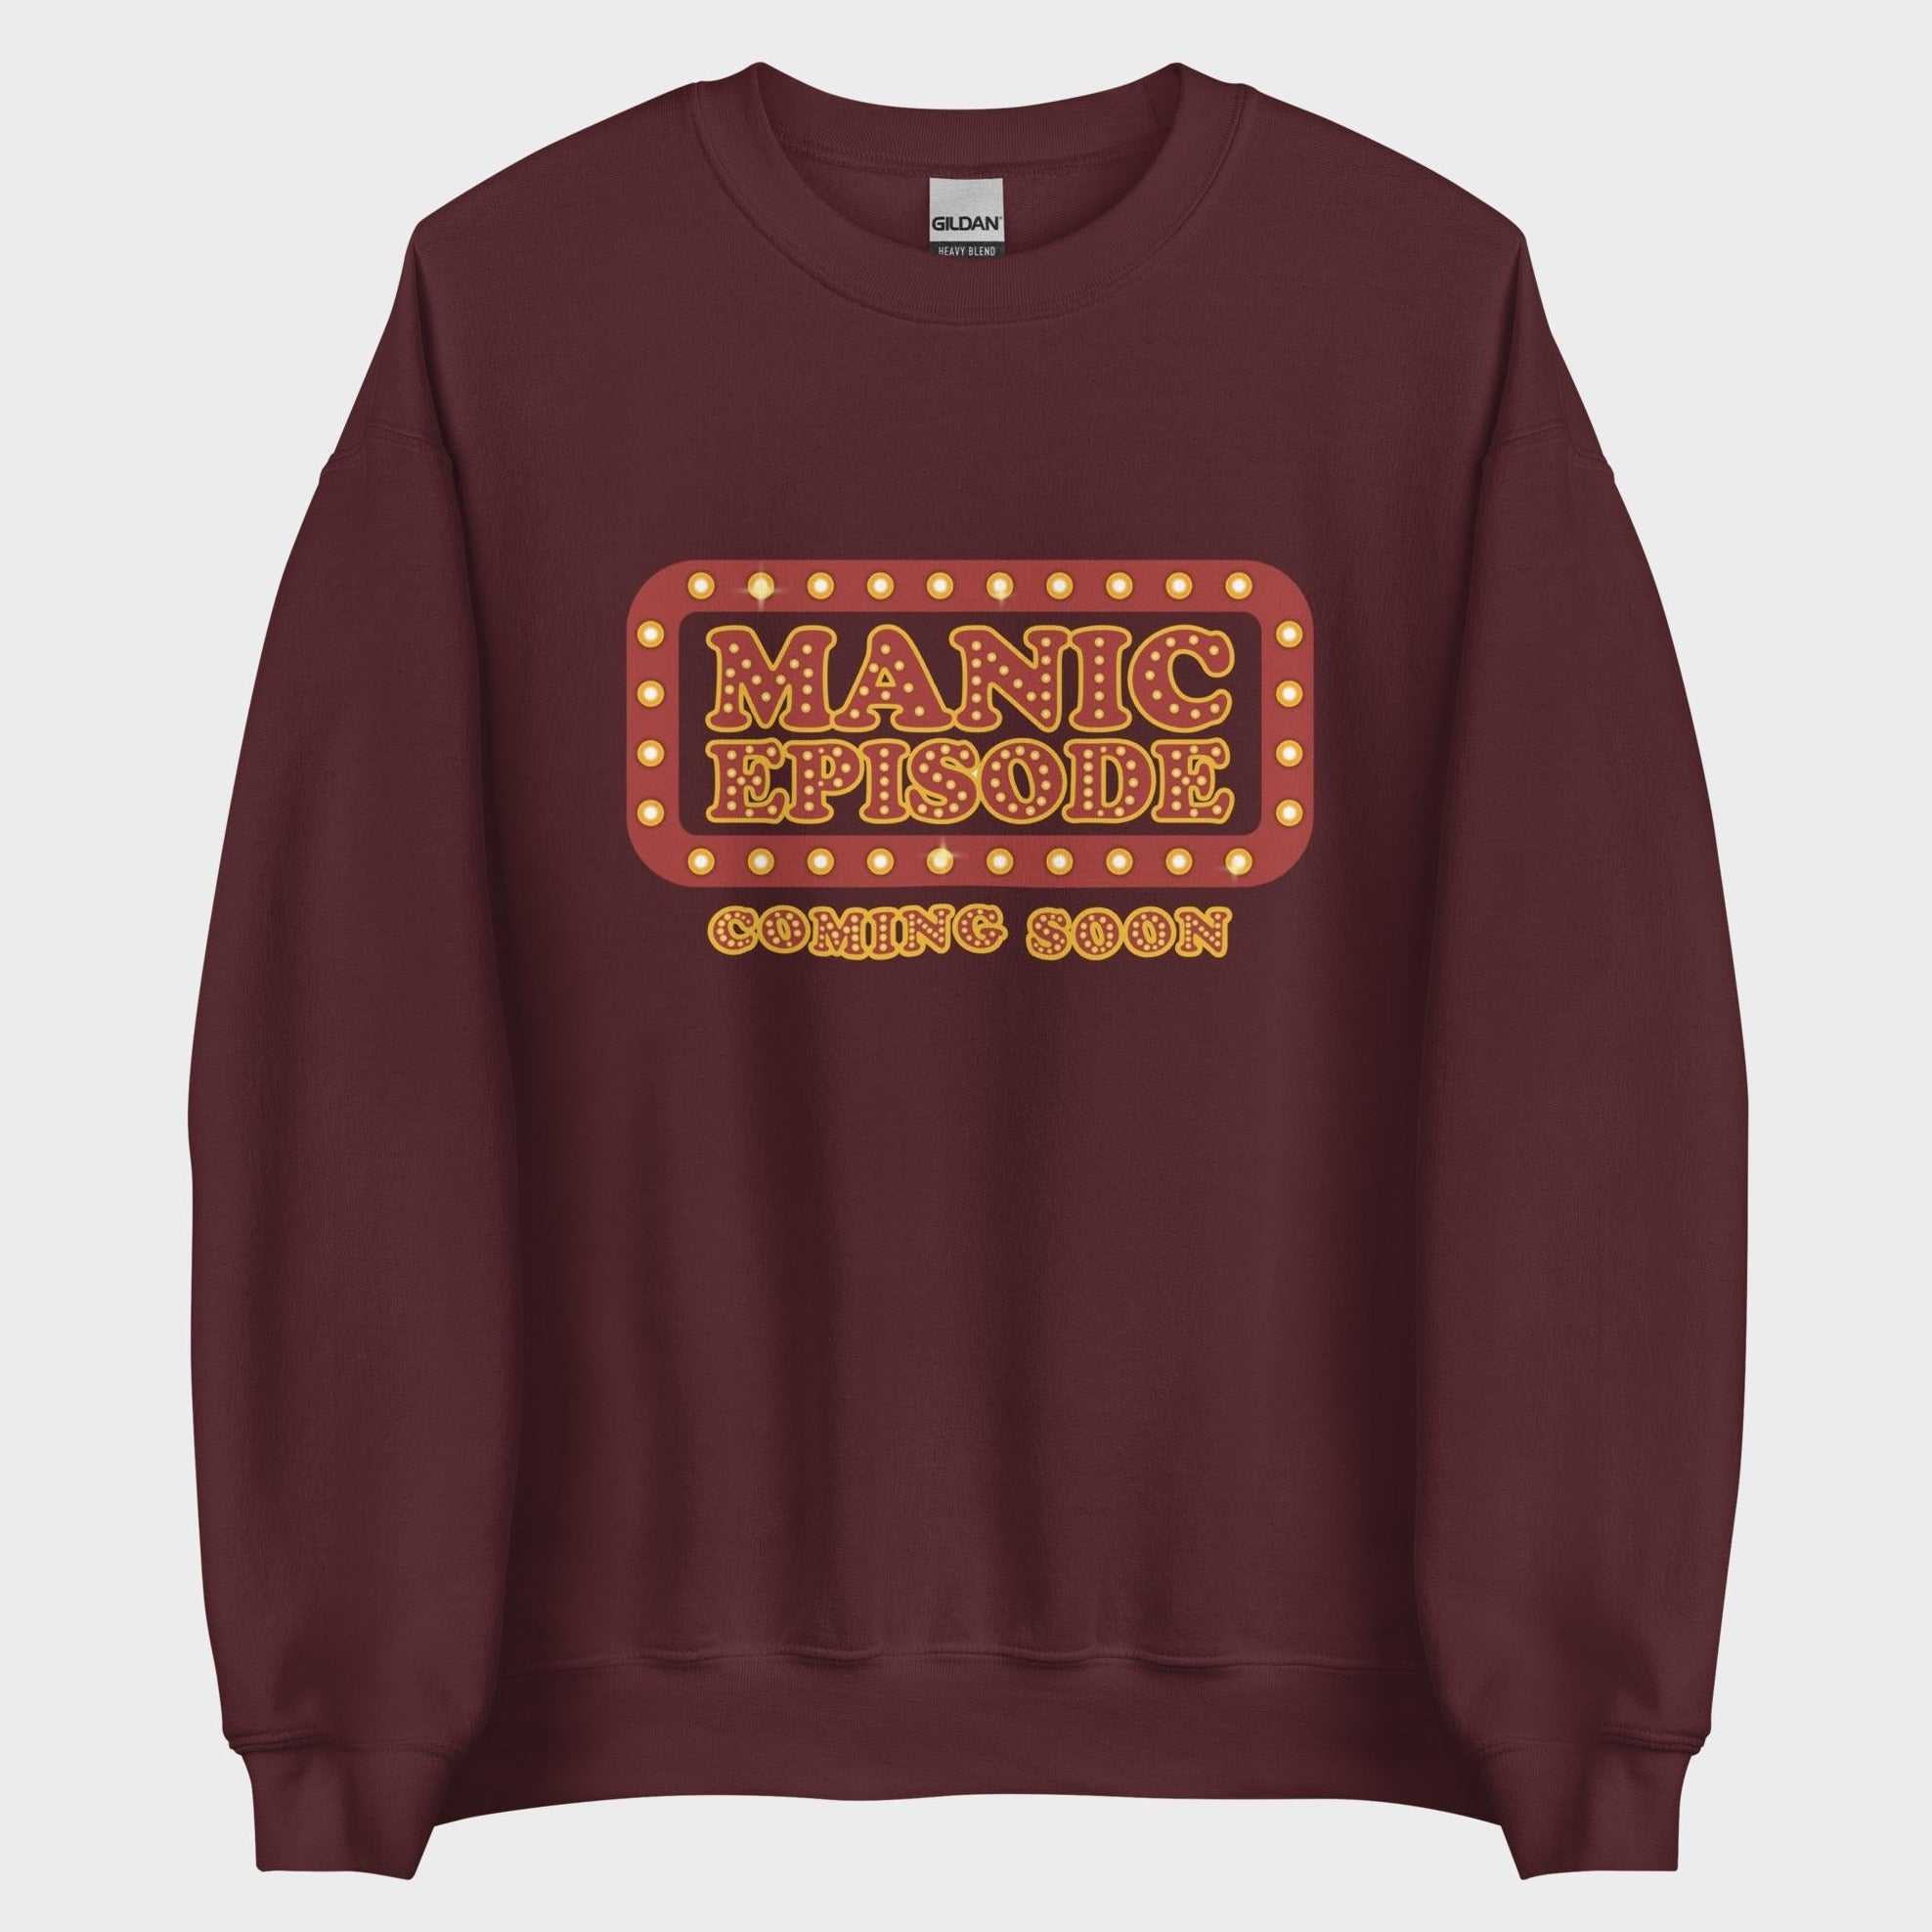 Manic Episode Coming Soon - Sweatshirt